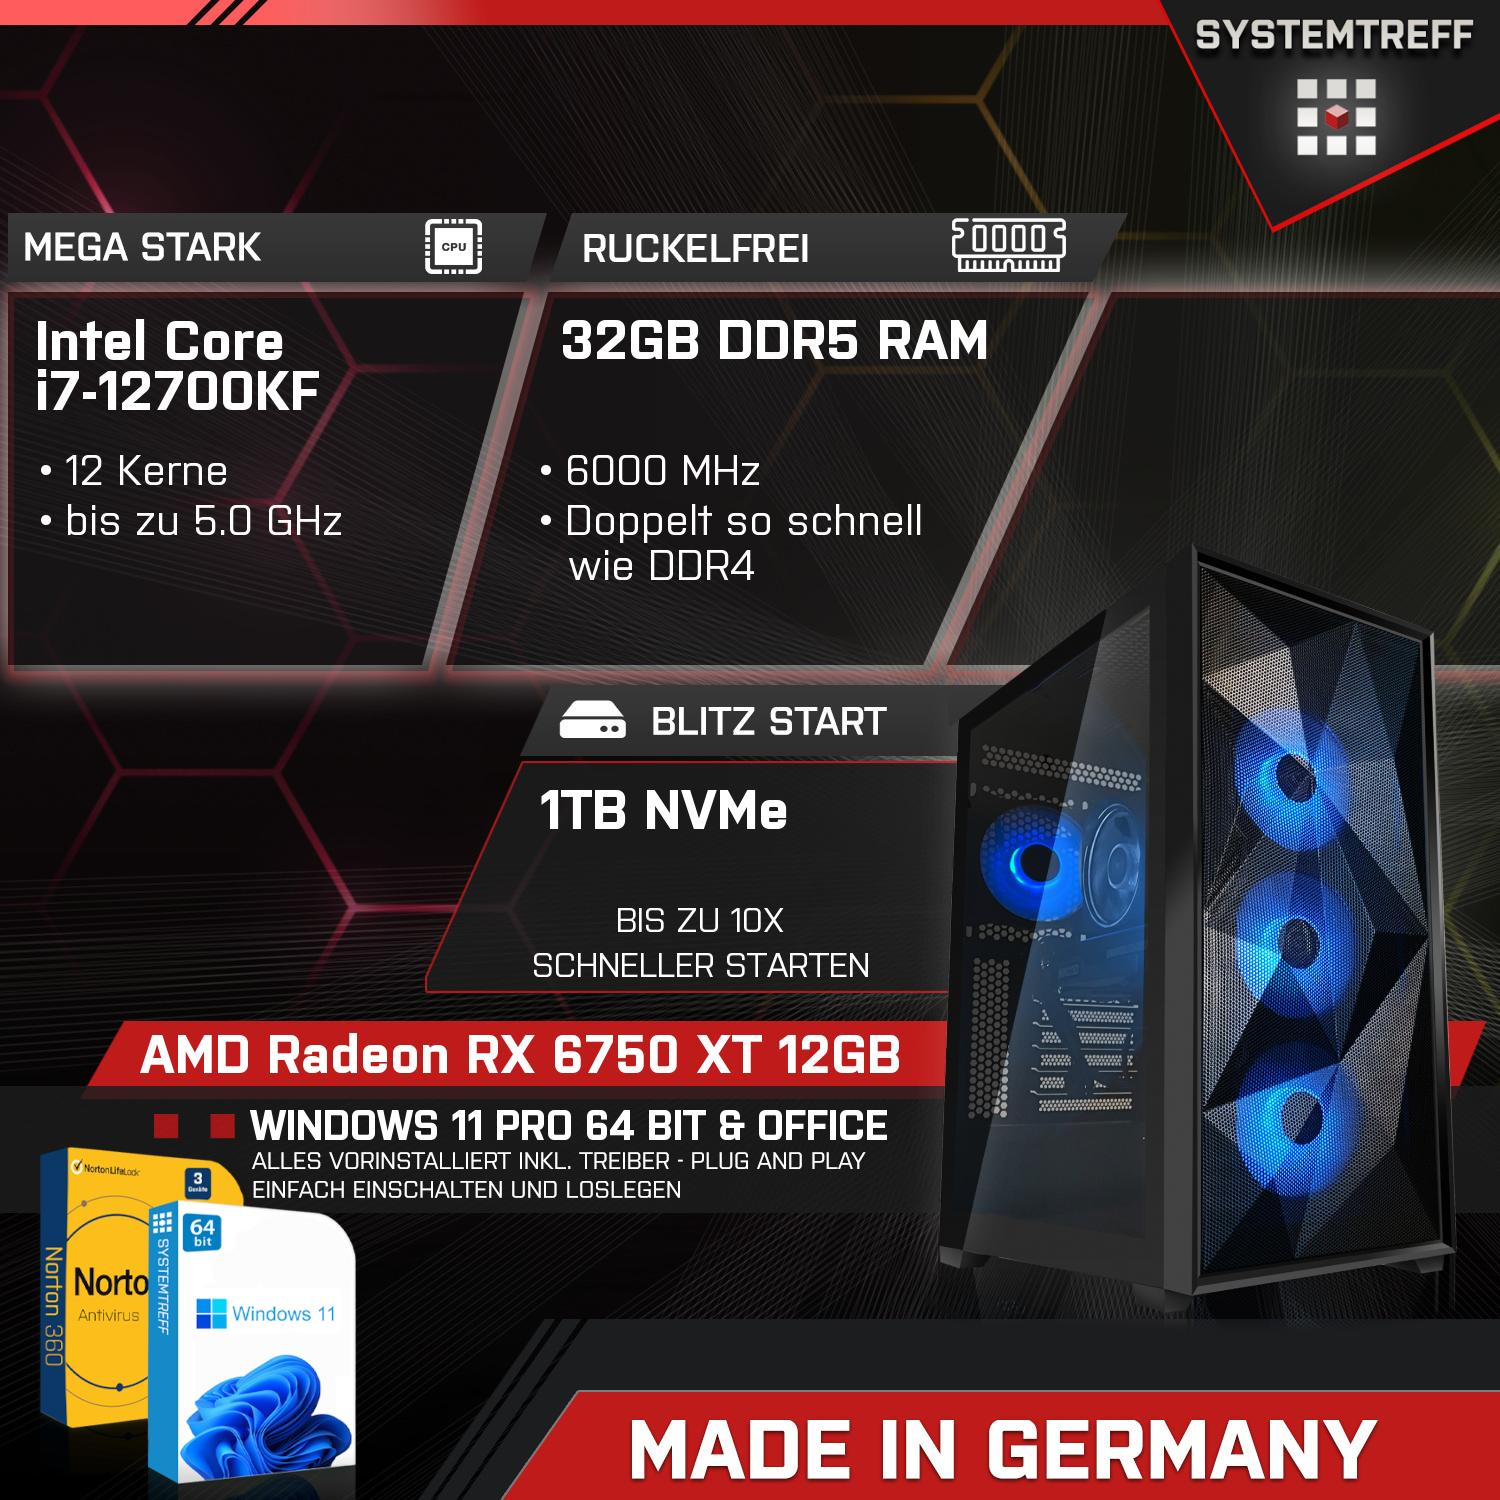 SYSTEMTREFF Gaming Komplett Intel Radeon mit i7-12700KF GB 12 12GB GB mSSD, PC GDDR6, Prozessor, GB 6750 XT Core 1000 RX i7-12700KF, AMD 32 RAM, Komplett